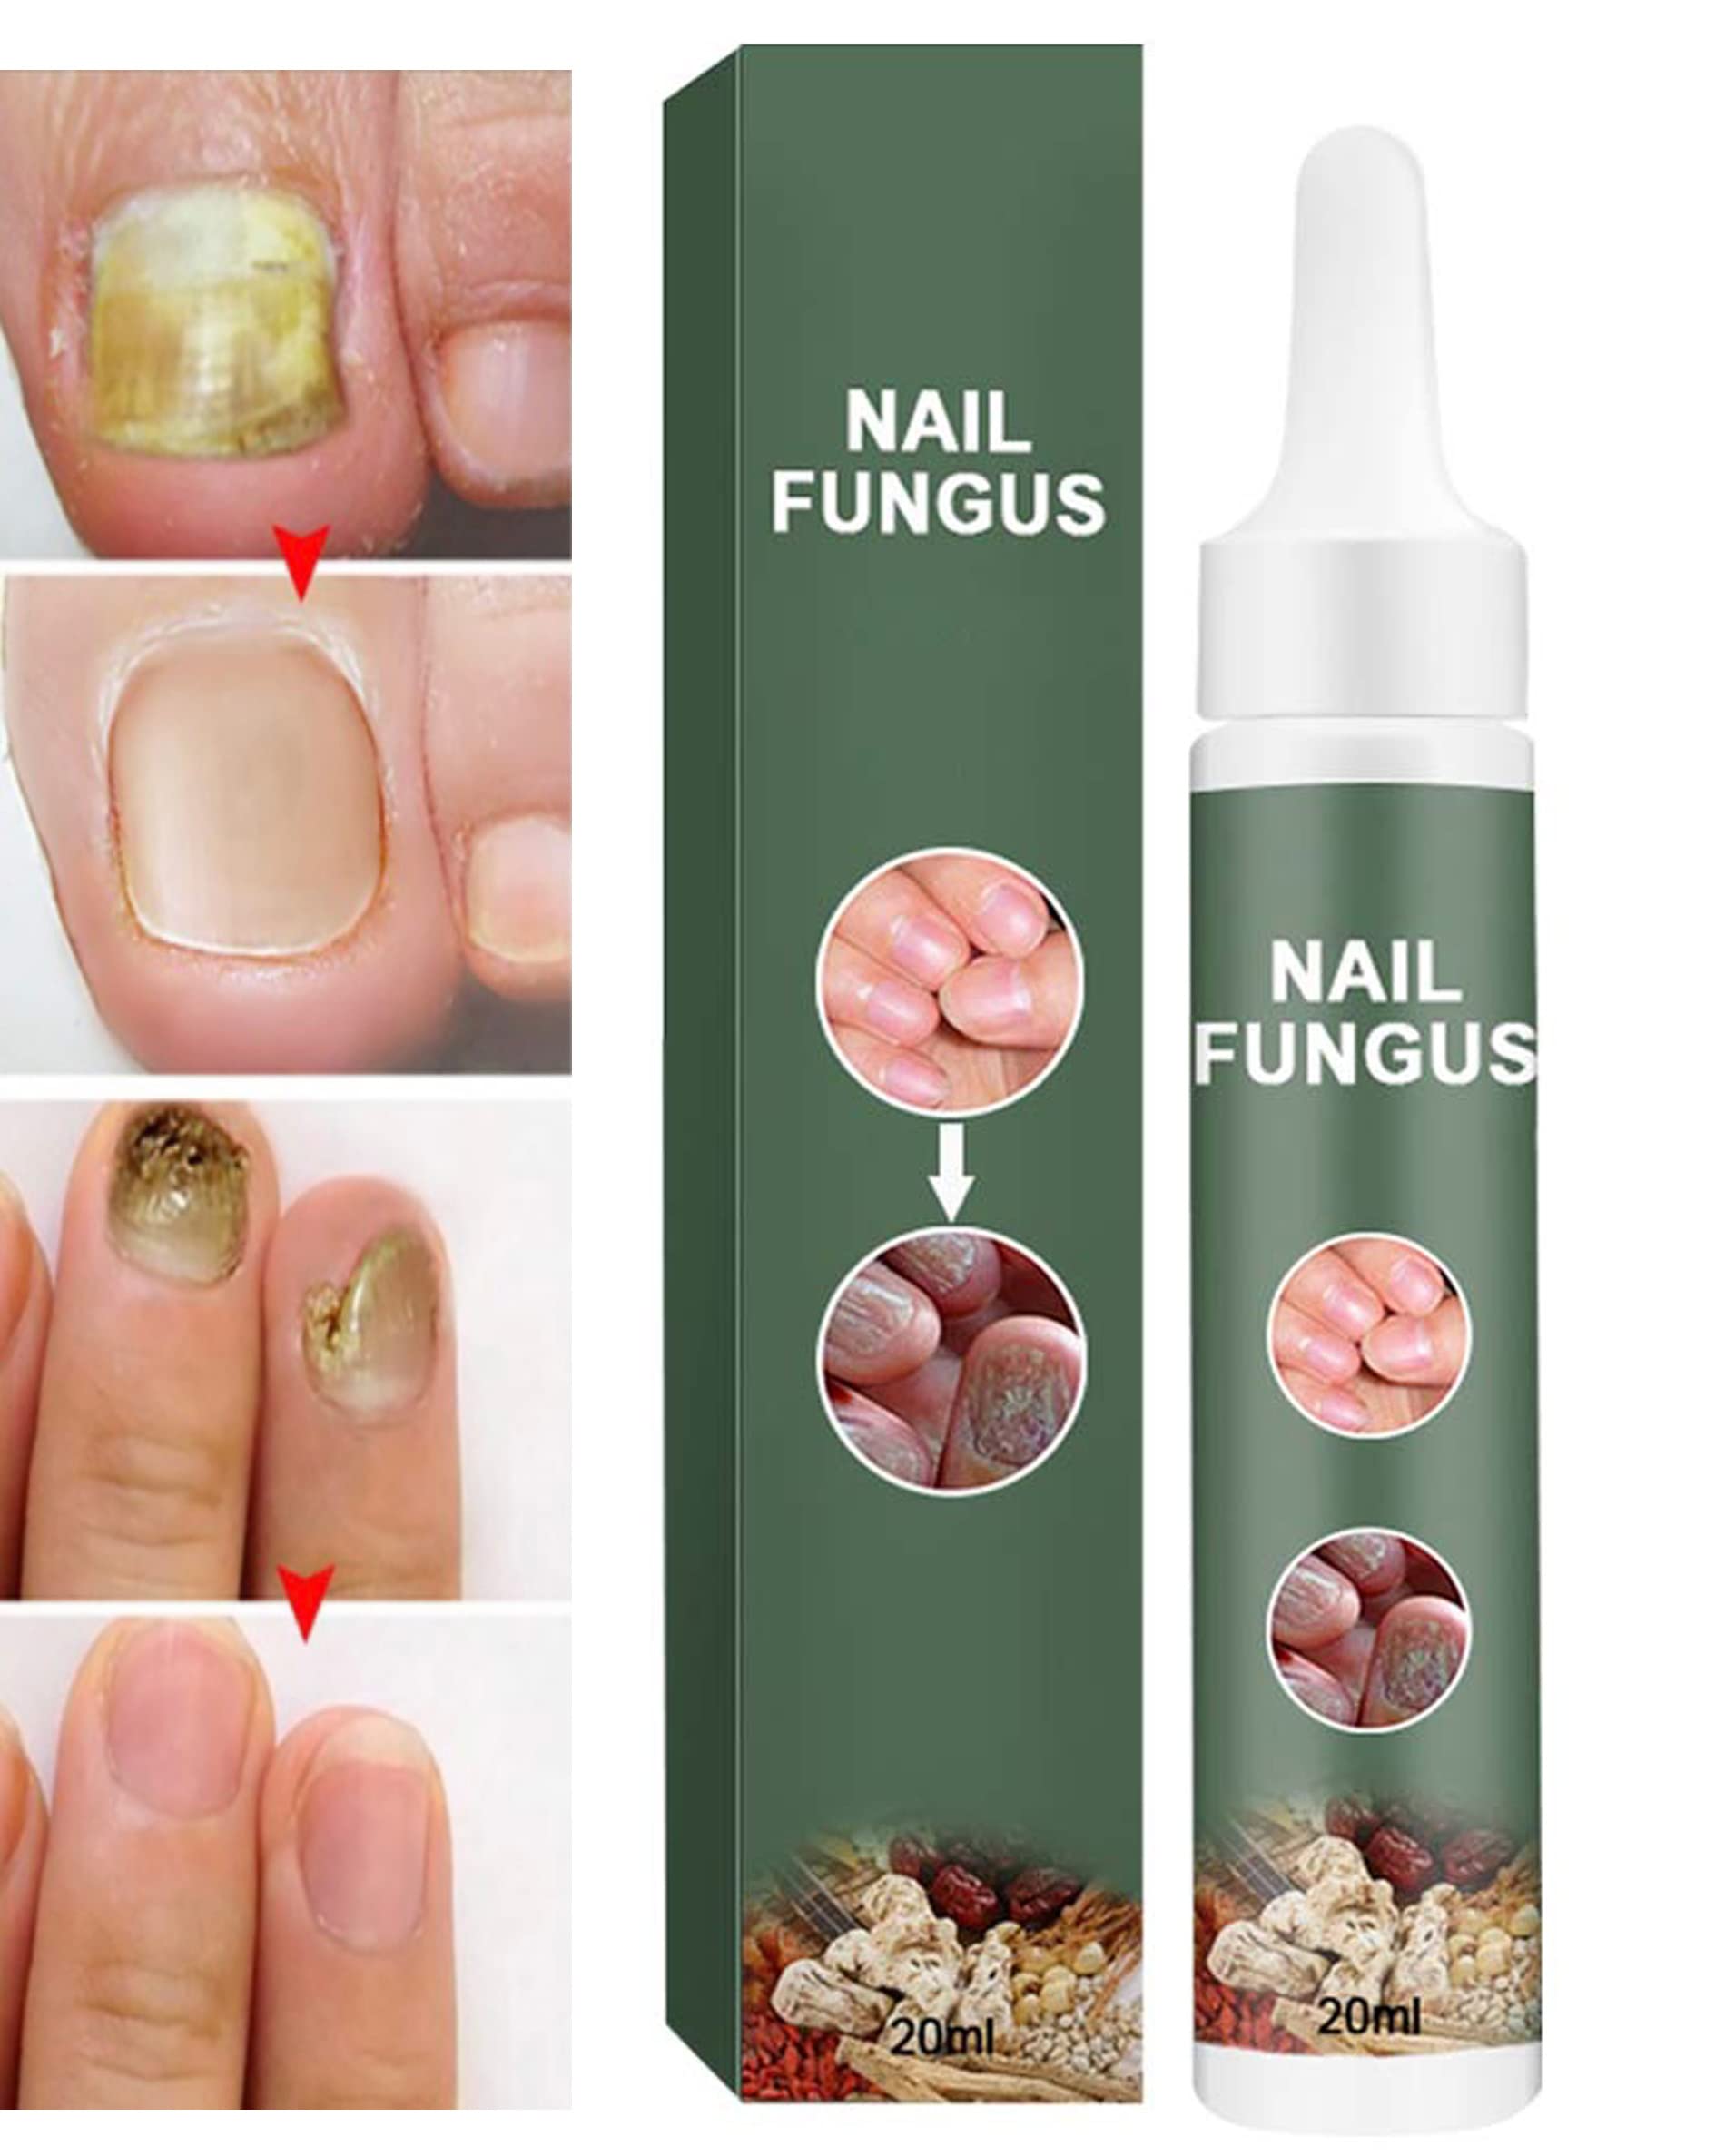 Toenail Fungus treatment